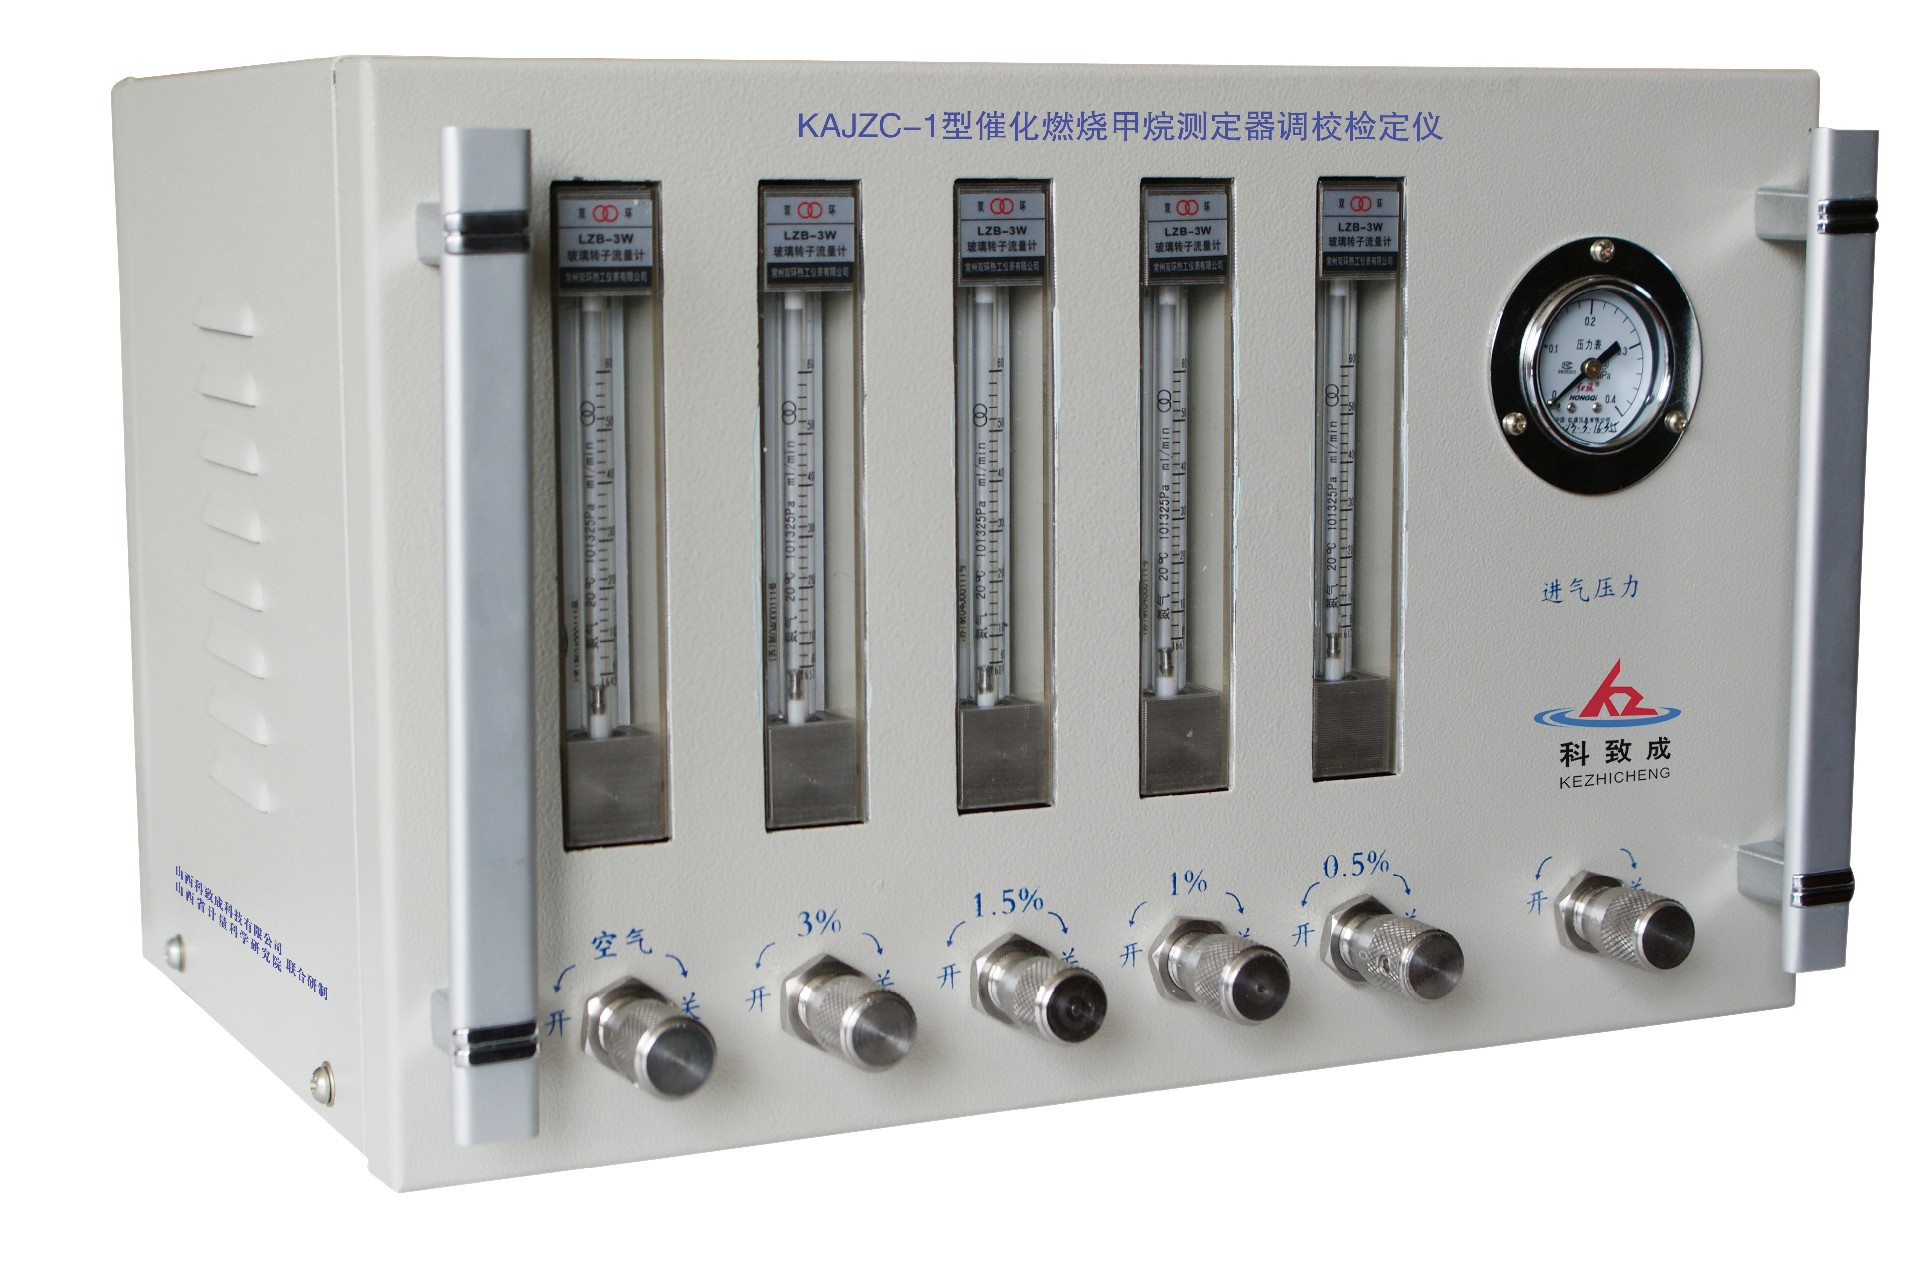 滨州KAJZC-1型催化燃烧甲烷测定器调校检定仪